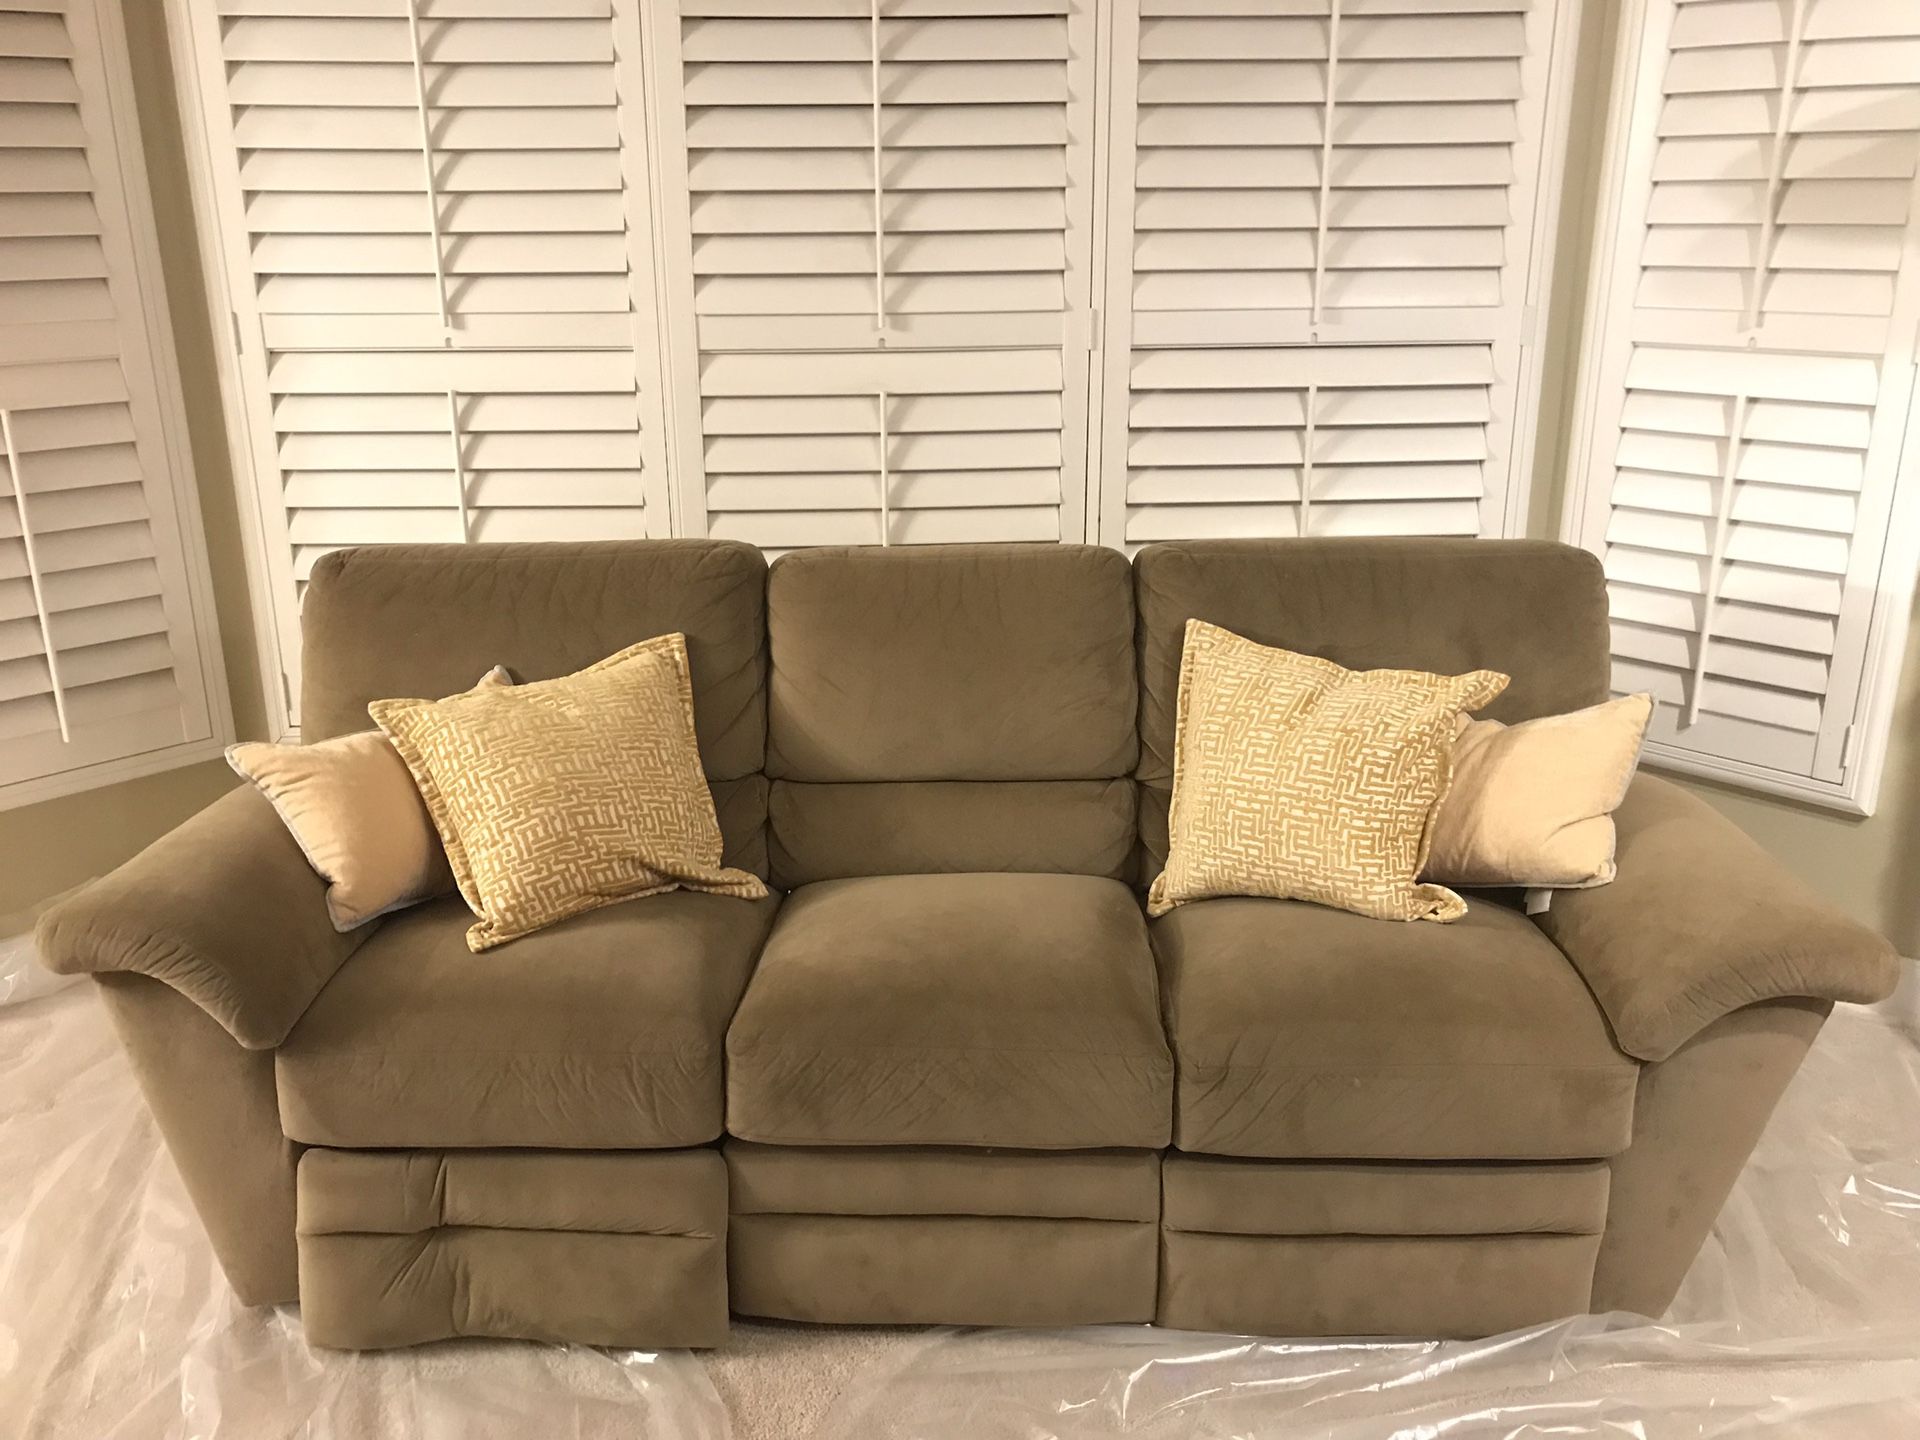 Lazy Boy couch/sofa $100